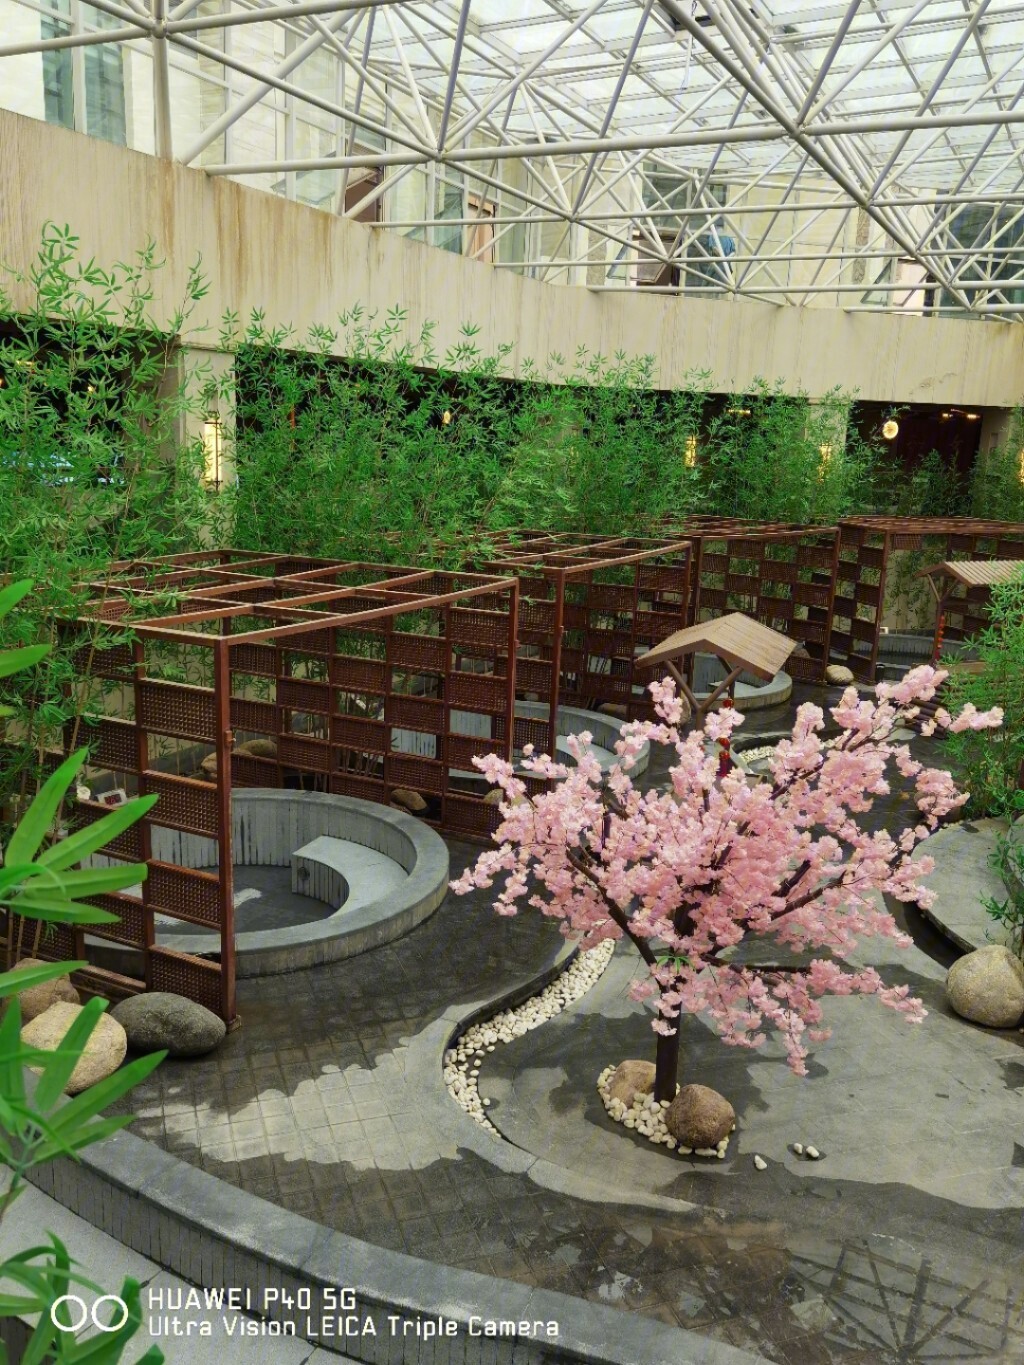 天庆温泉酒店图1:半户外式温泉,是露天的,有一个大池子和几个小池子